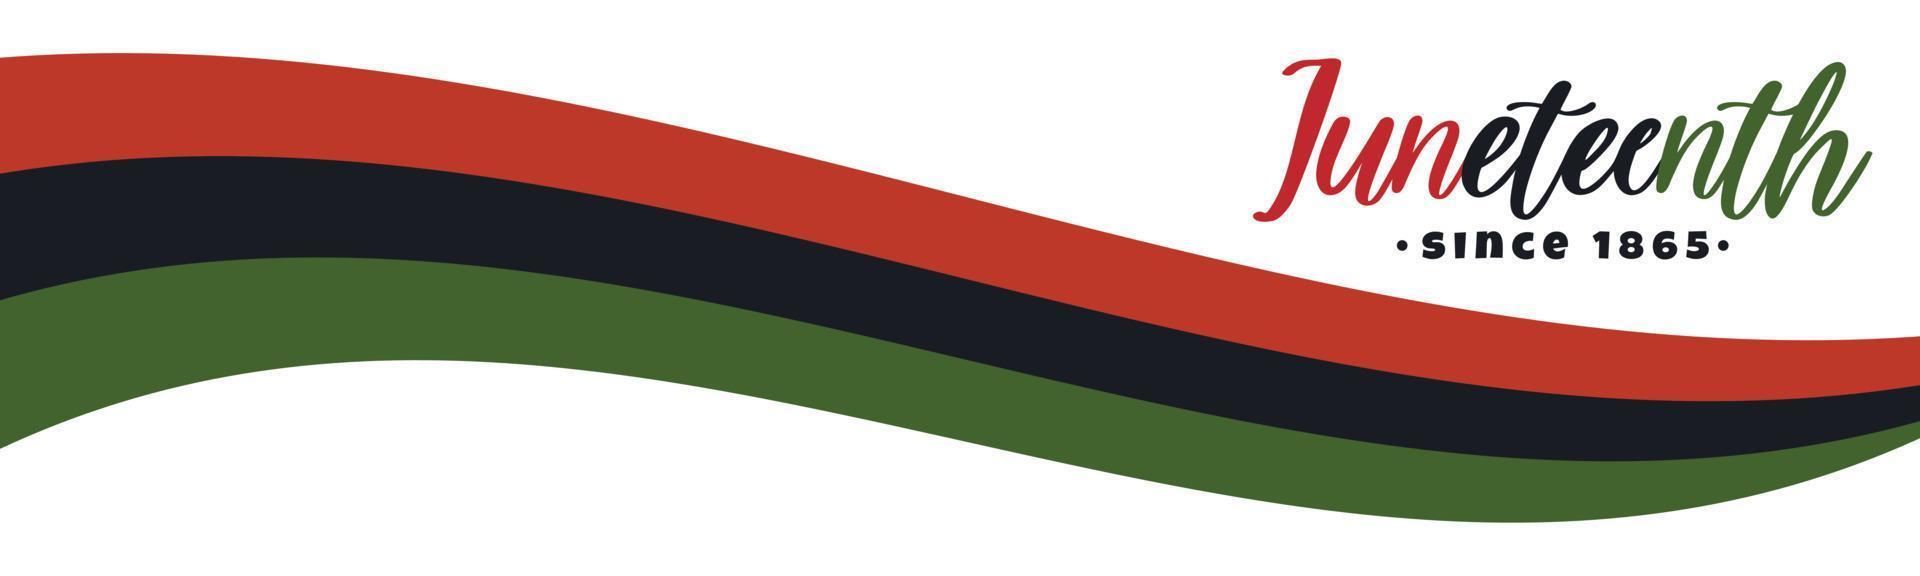 juneteenth, dal 1865 testo lettering logo. design banner orizzontale con bandiera panafricana di liberazione nera con strisce rosse, nere e verdi.. illustrazione vettoriale isolata su sfondo bianco,